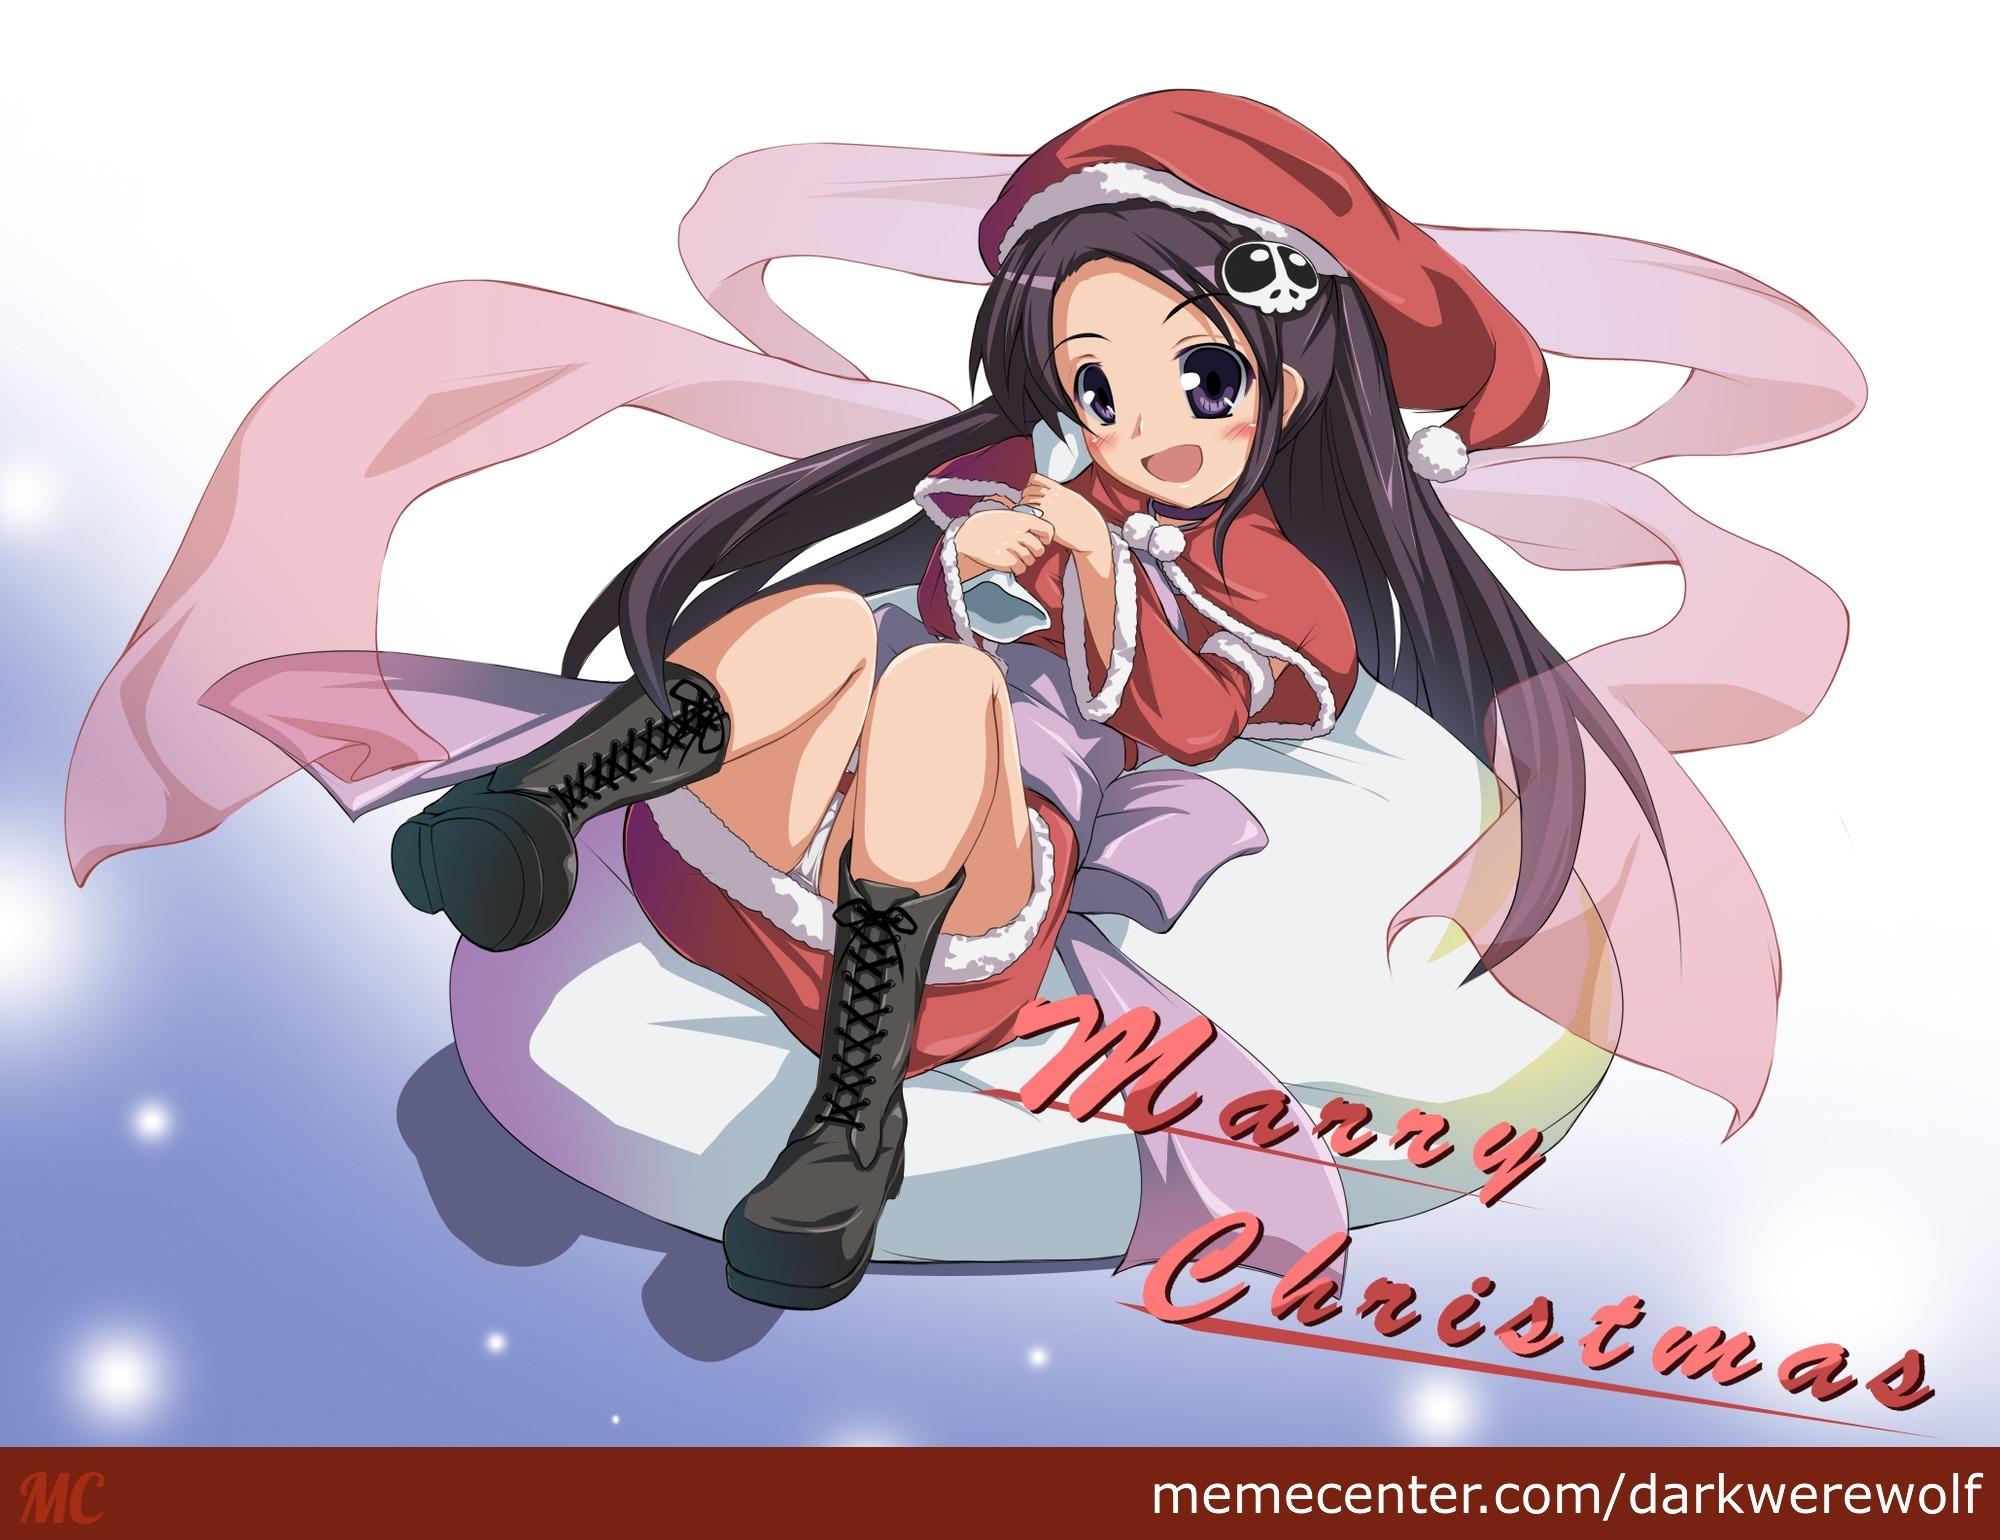 Christmas Anime Wallpaper